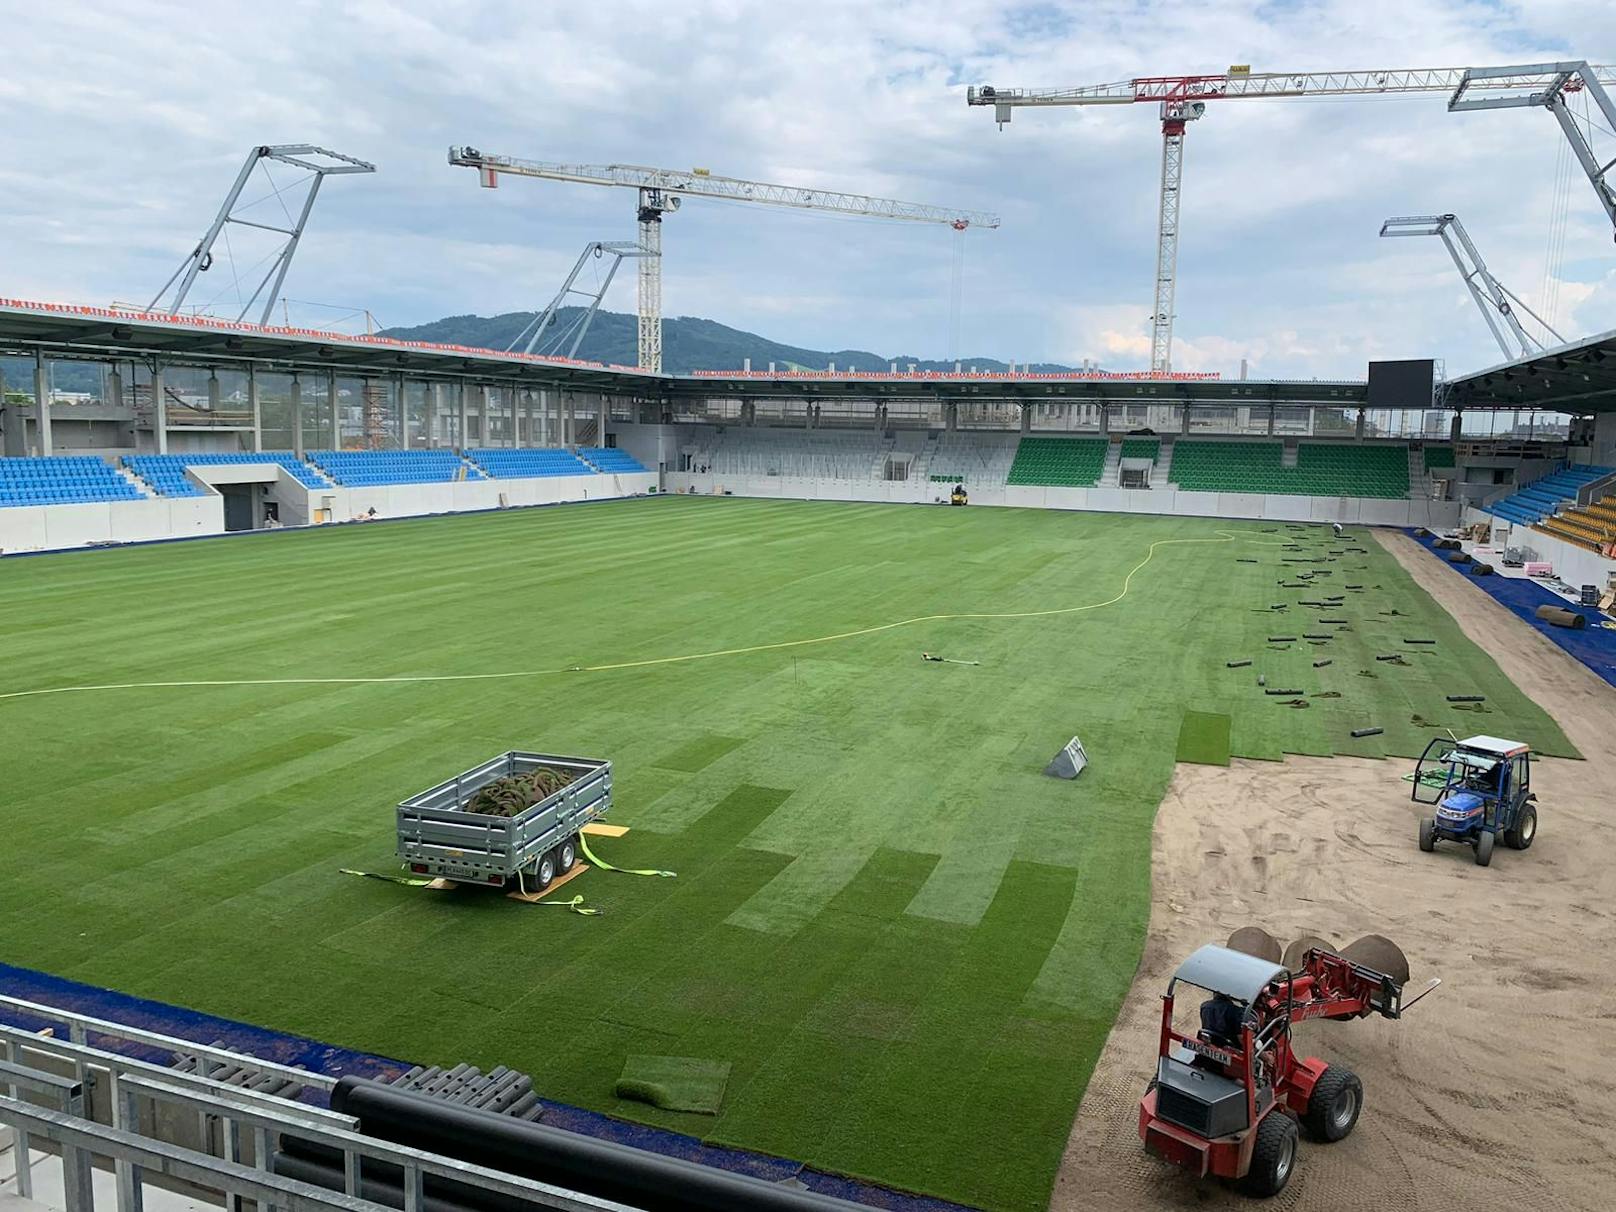 Der Countdown zur Eröffnung des neuen Stadions läuft. Den Spielern wird jetzt schon einmal der Rasen ausgerollt..